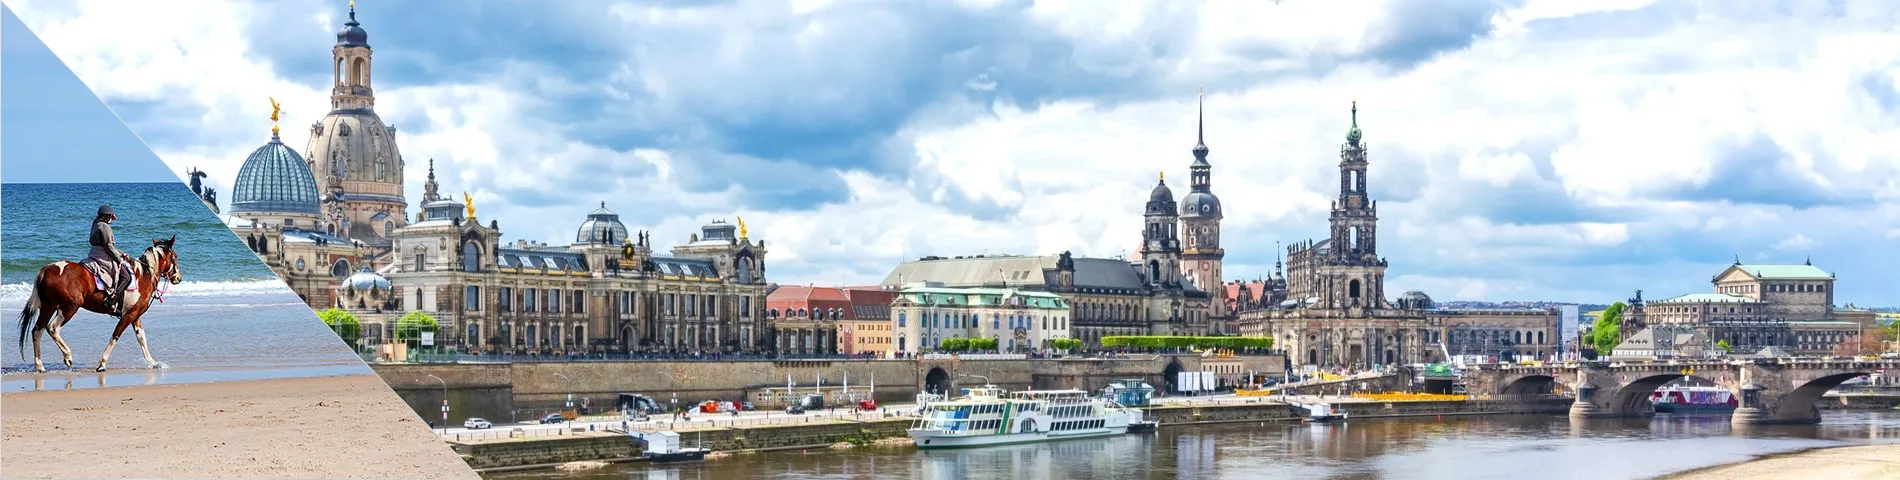 Dresden - Saksa & ratsastus